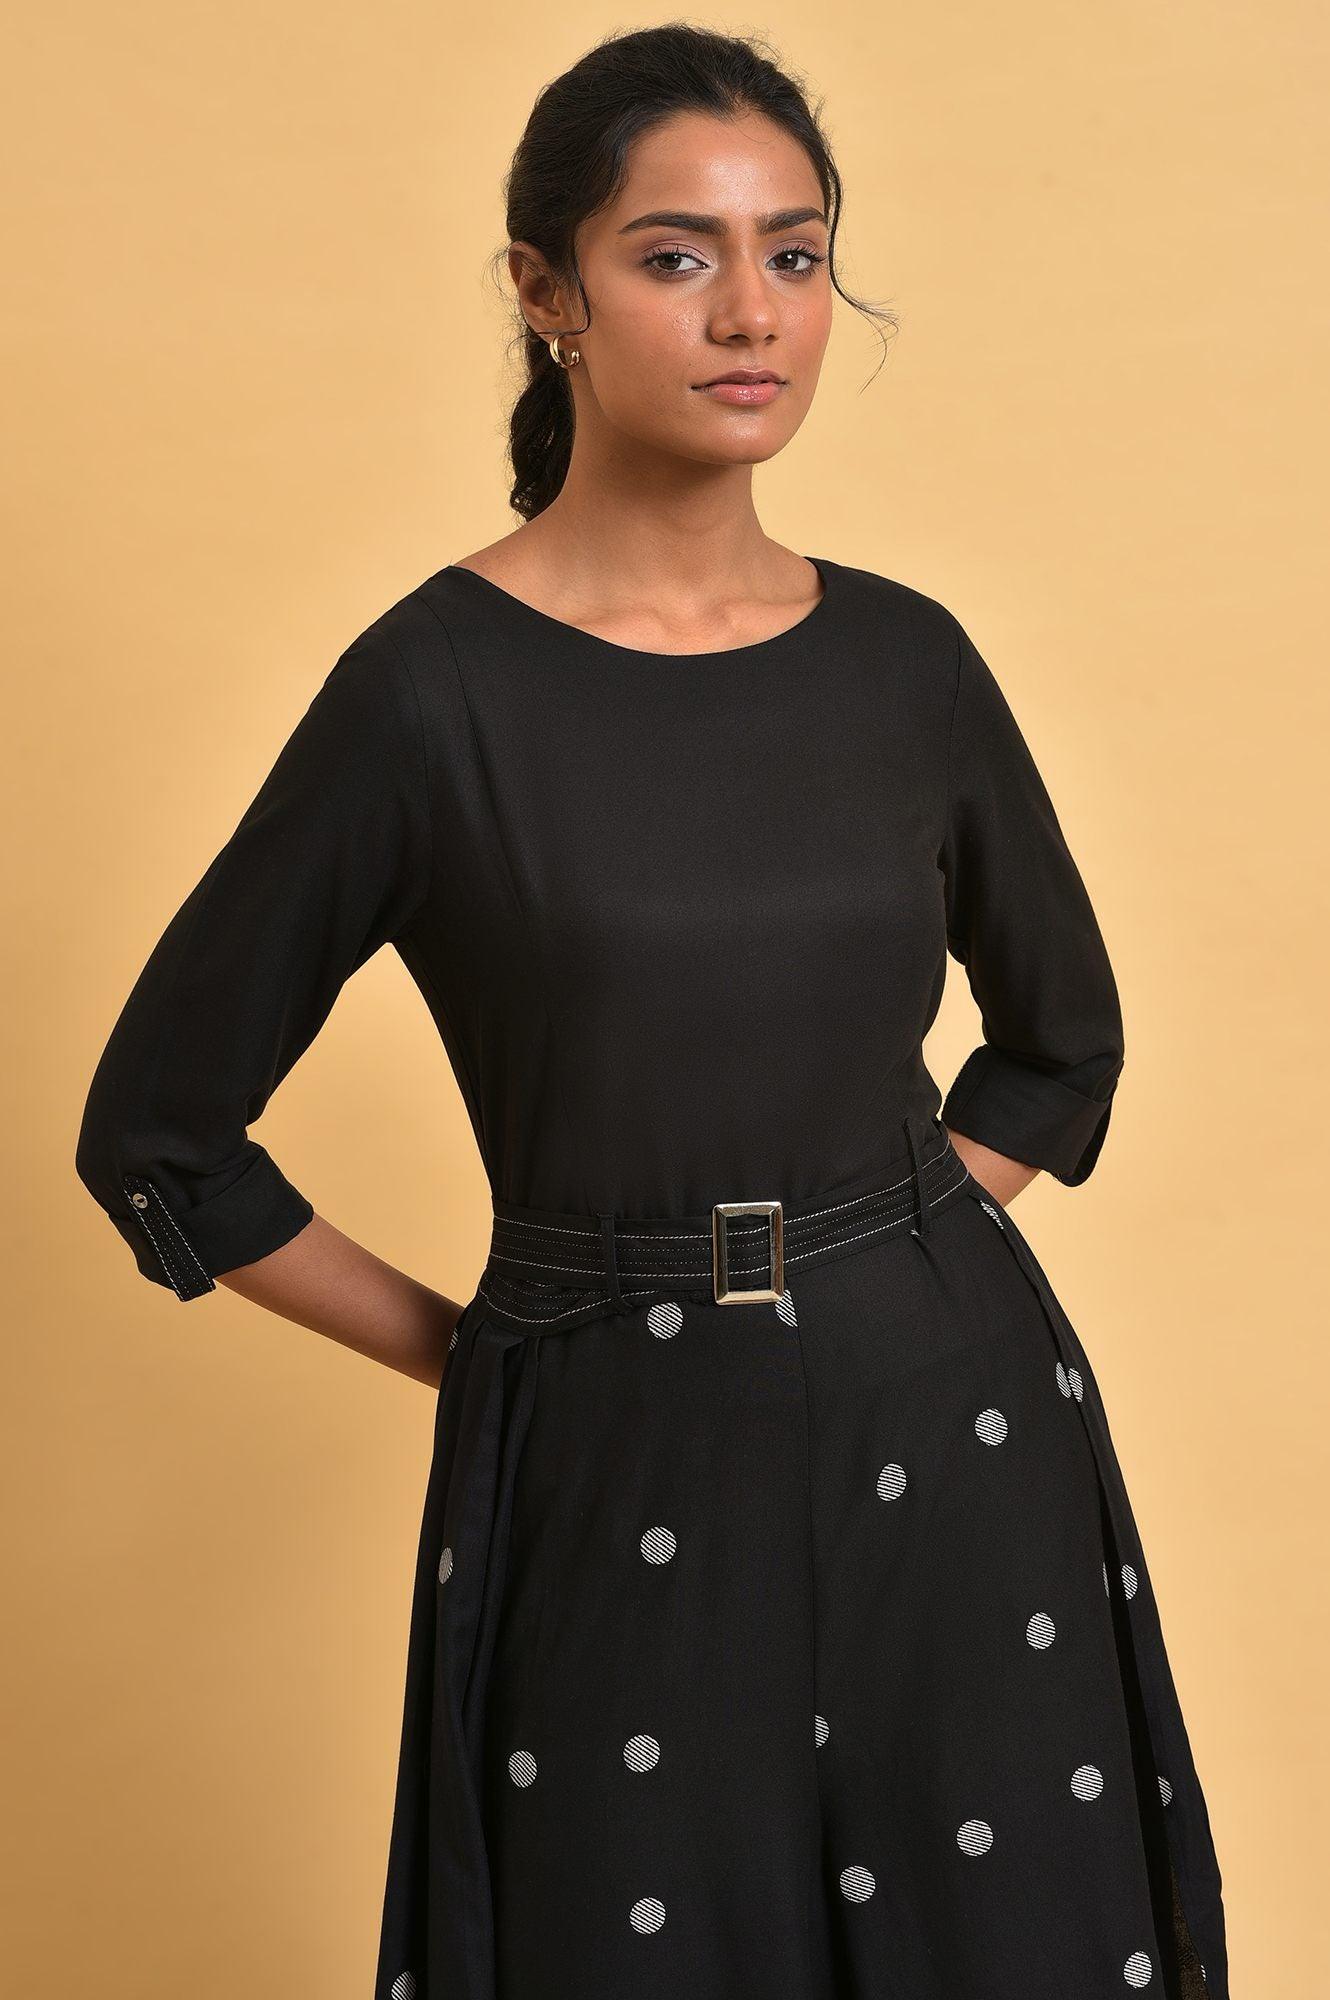 Black Polka Dot Jumpsuit with Belt - wforwoman